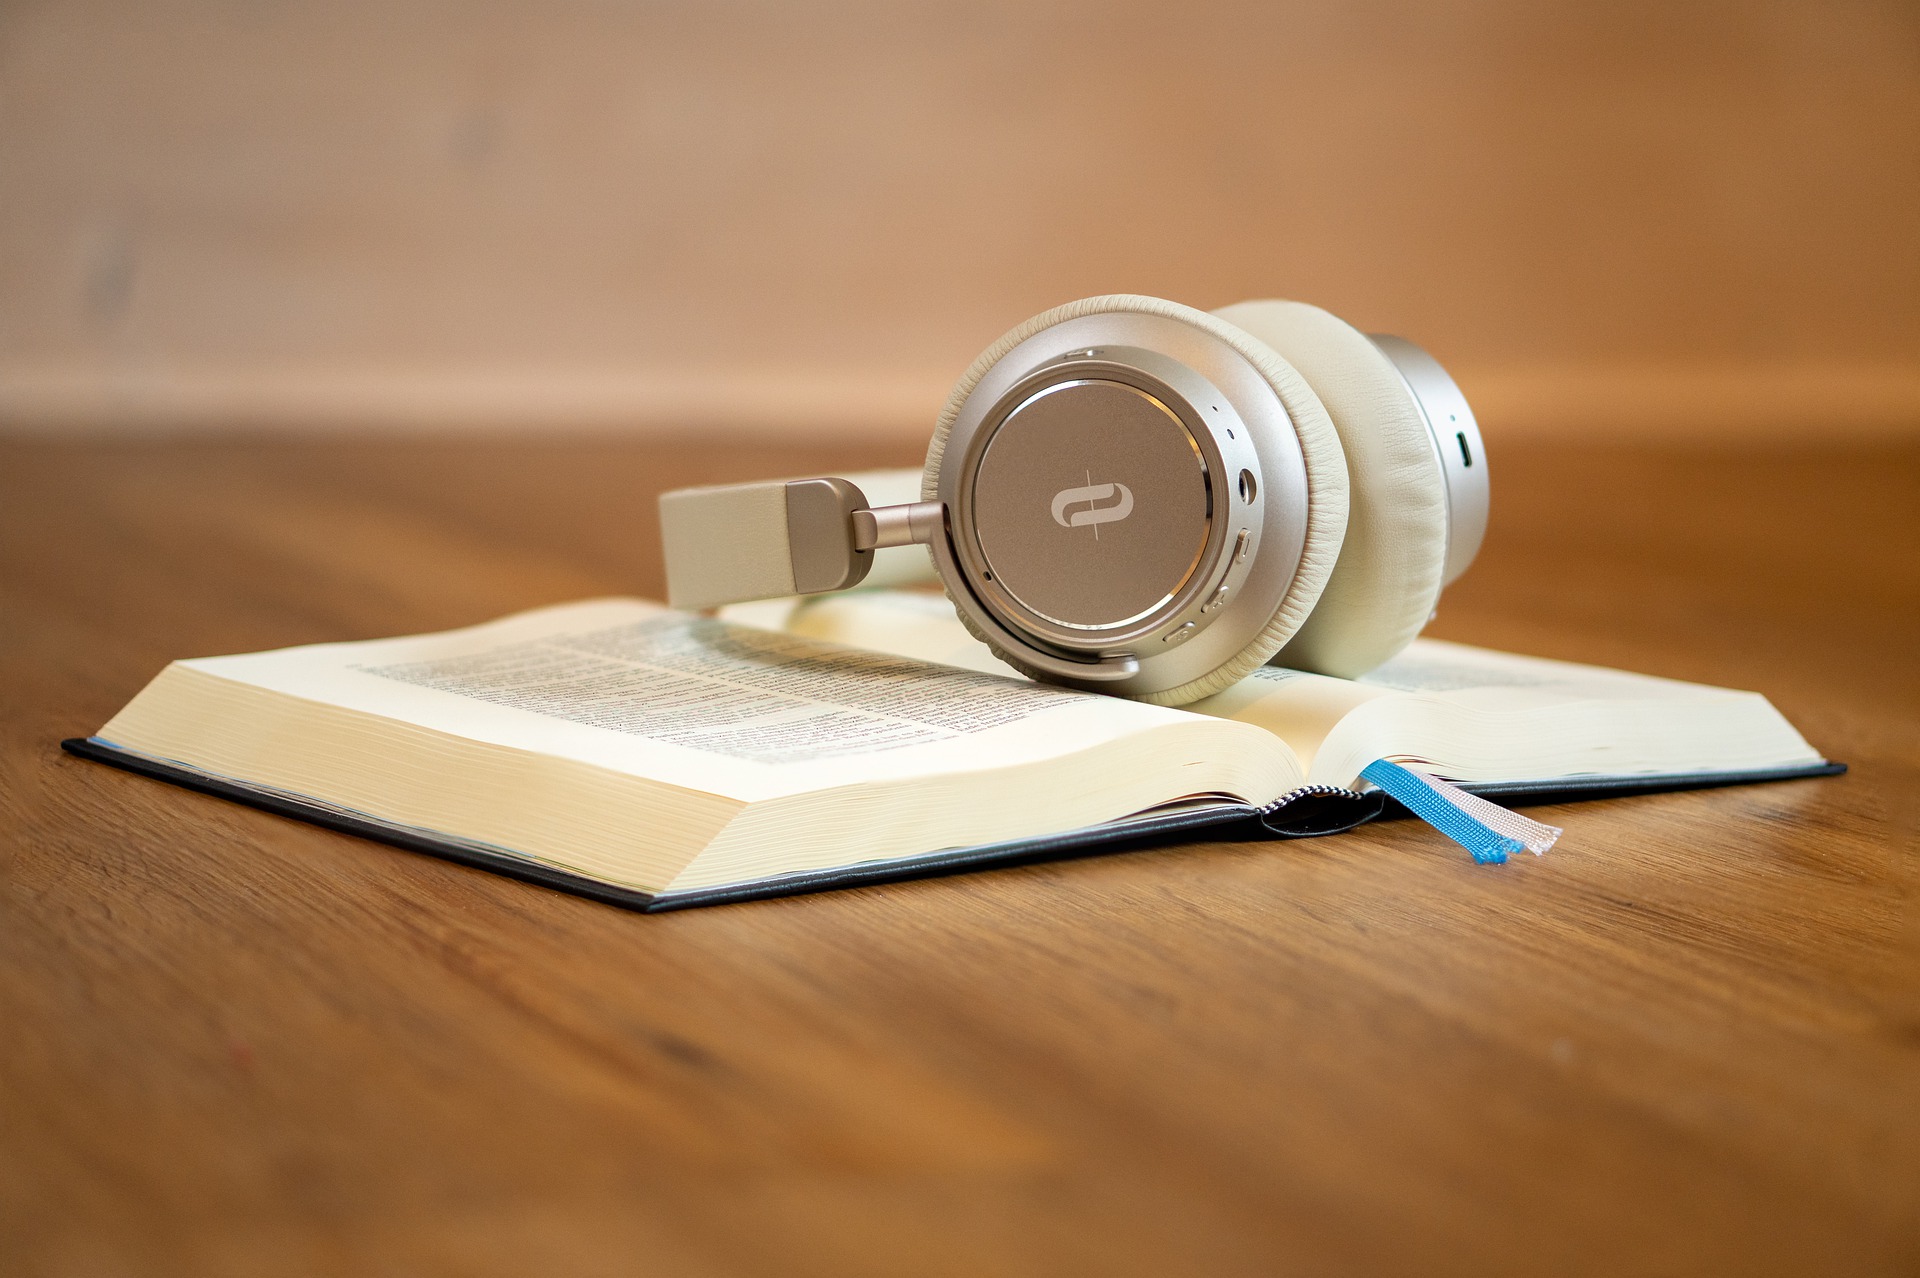 Benefits of audiobooks